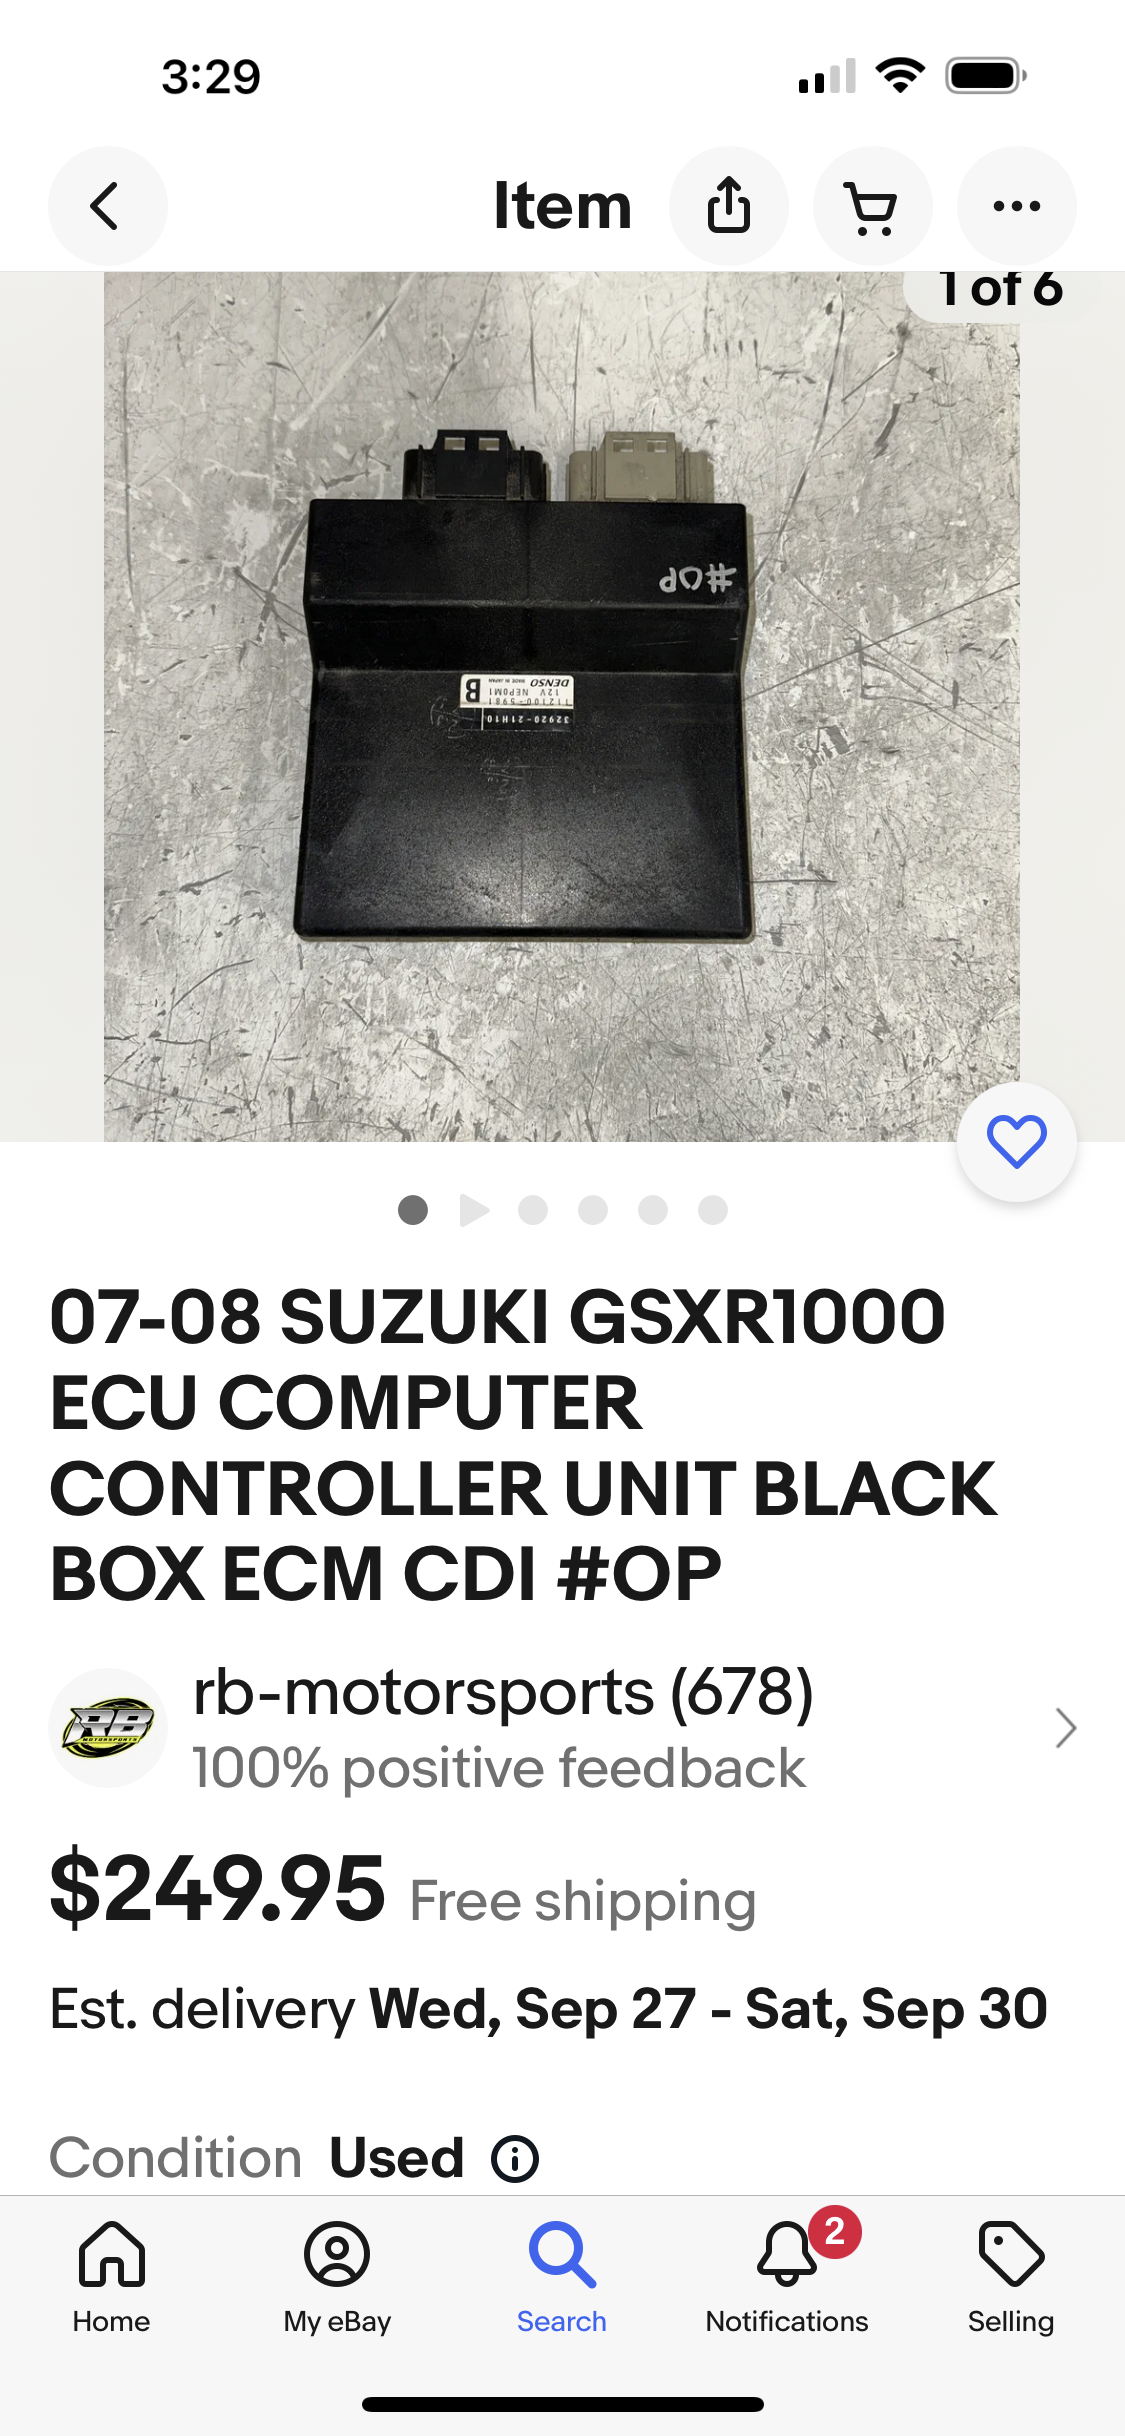 Suzuki GSX are CDI’s Hayabusa CDI’s